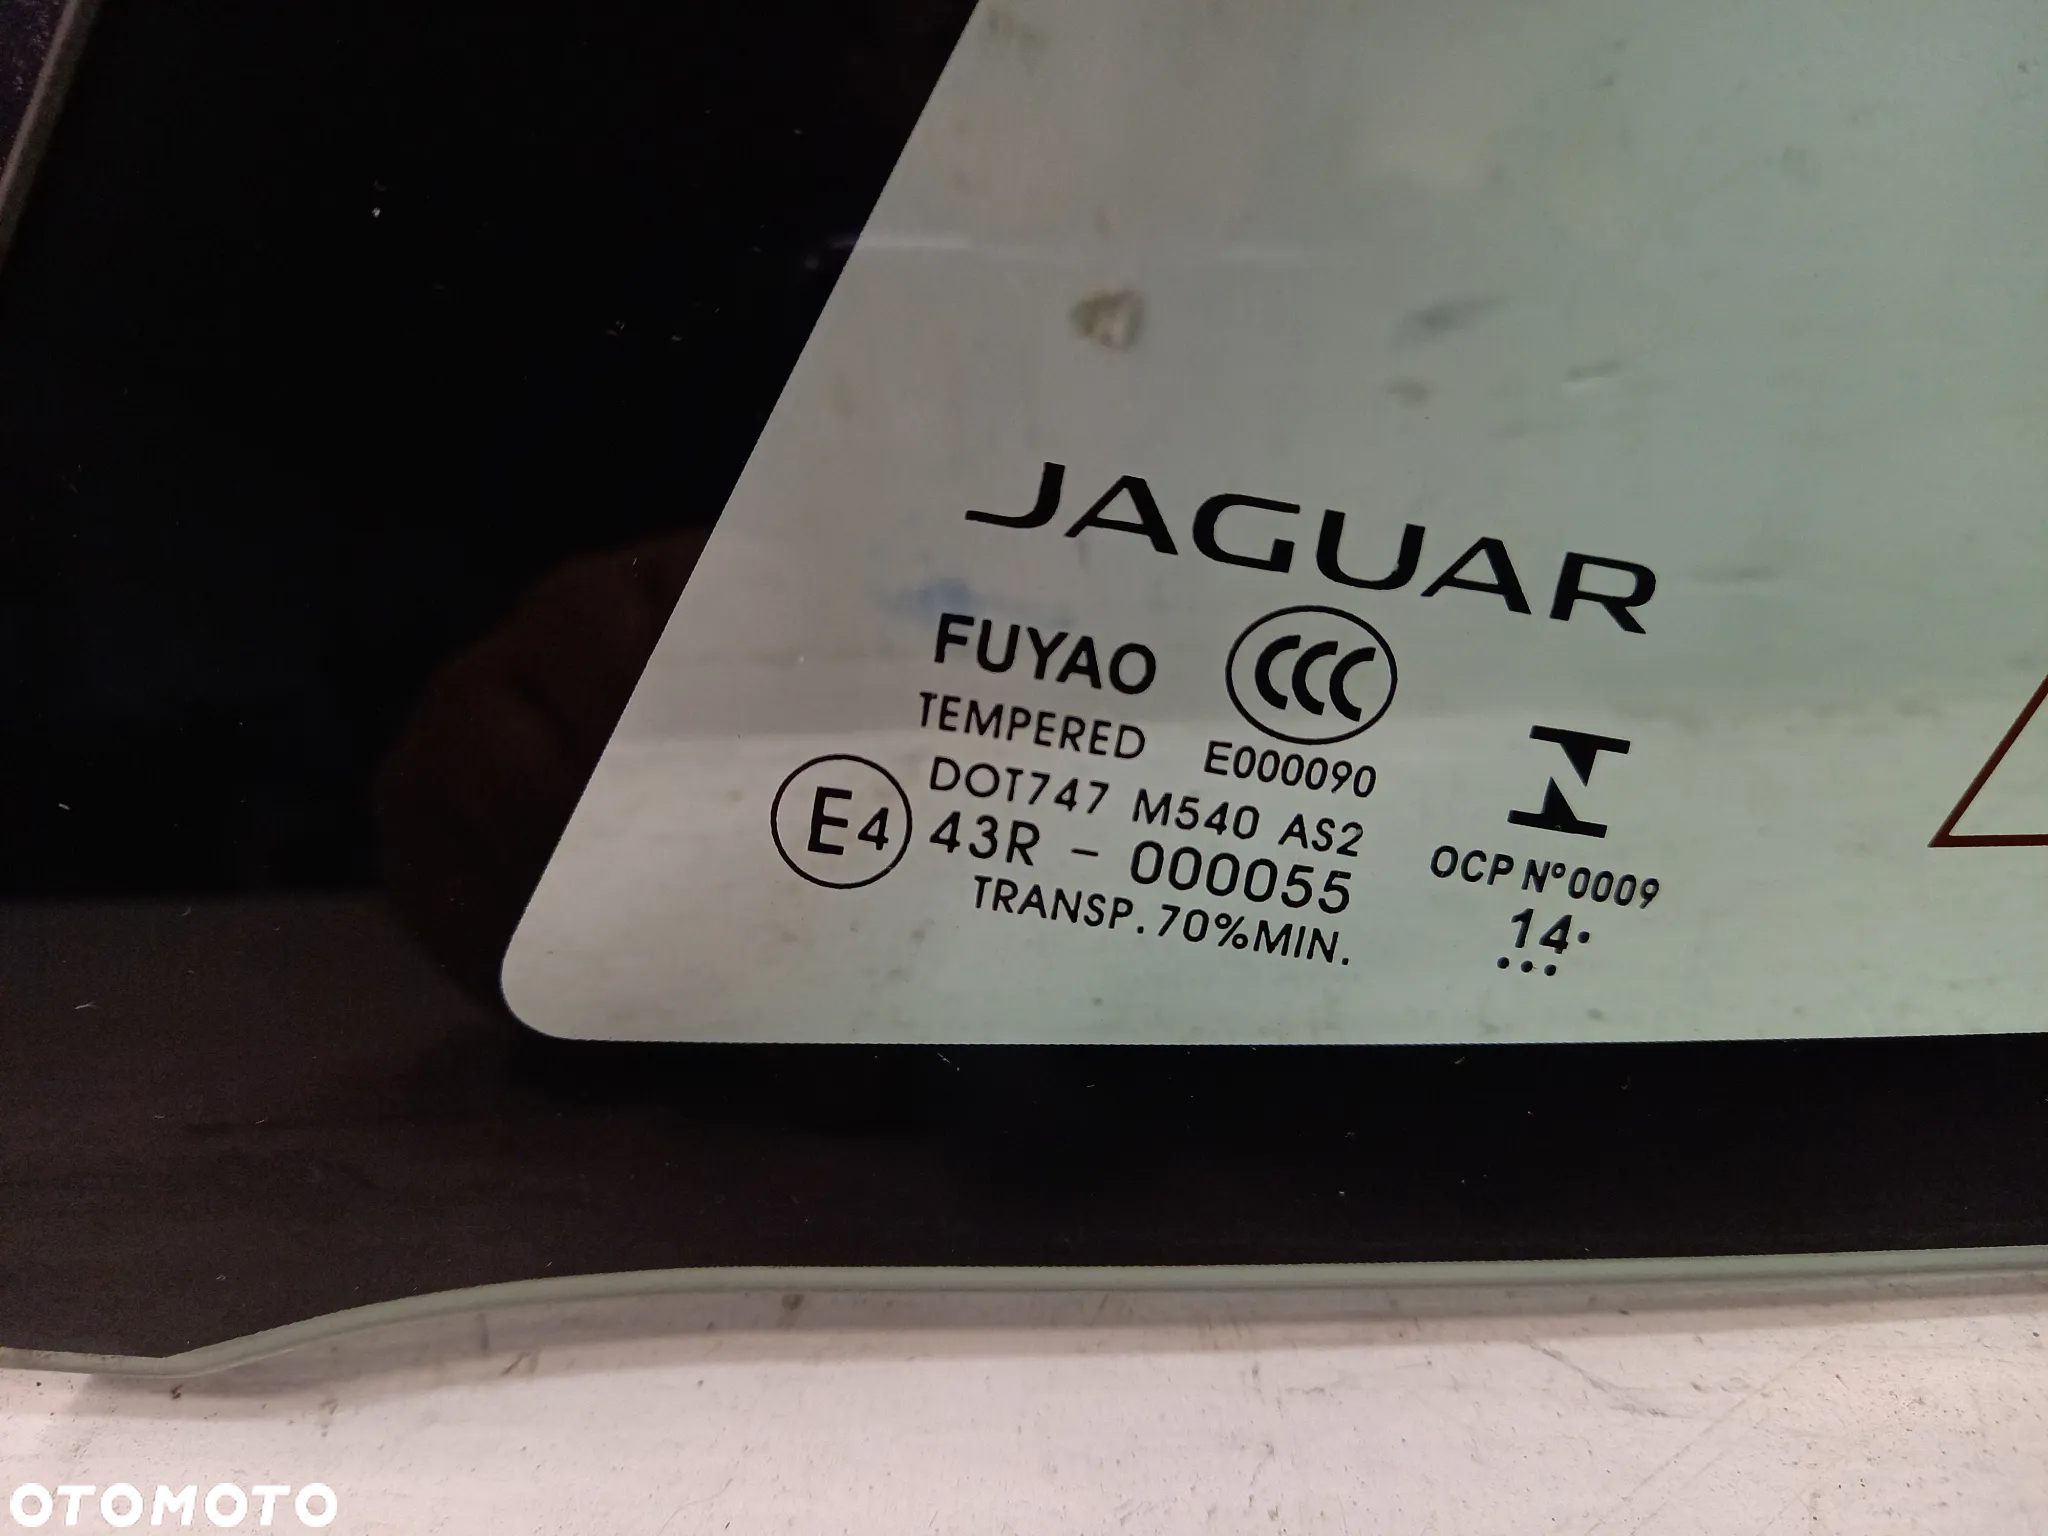 Jaguar F Type X152 Coupe szyba tylna tyl lewa w karoserie karoseryjna + Antena 14 rok - 2